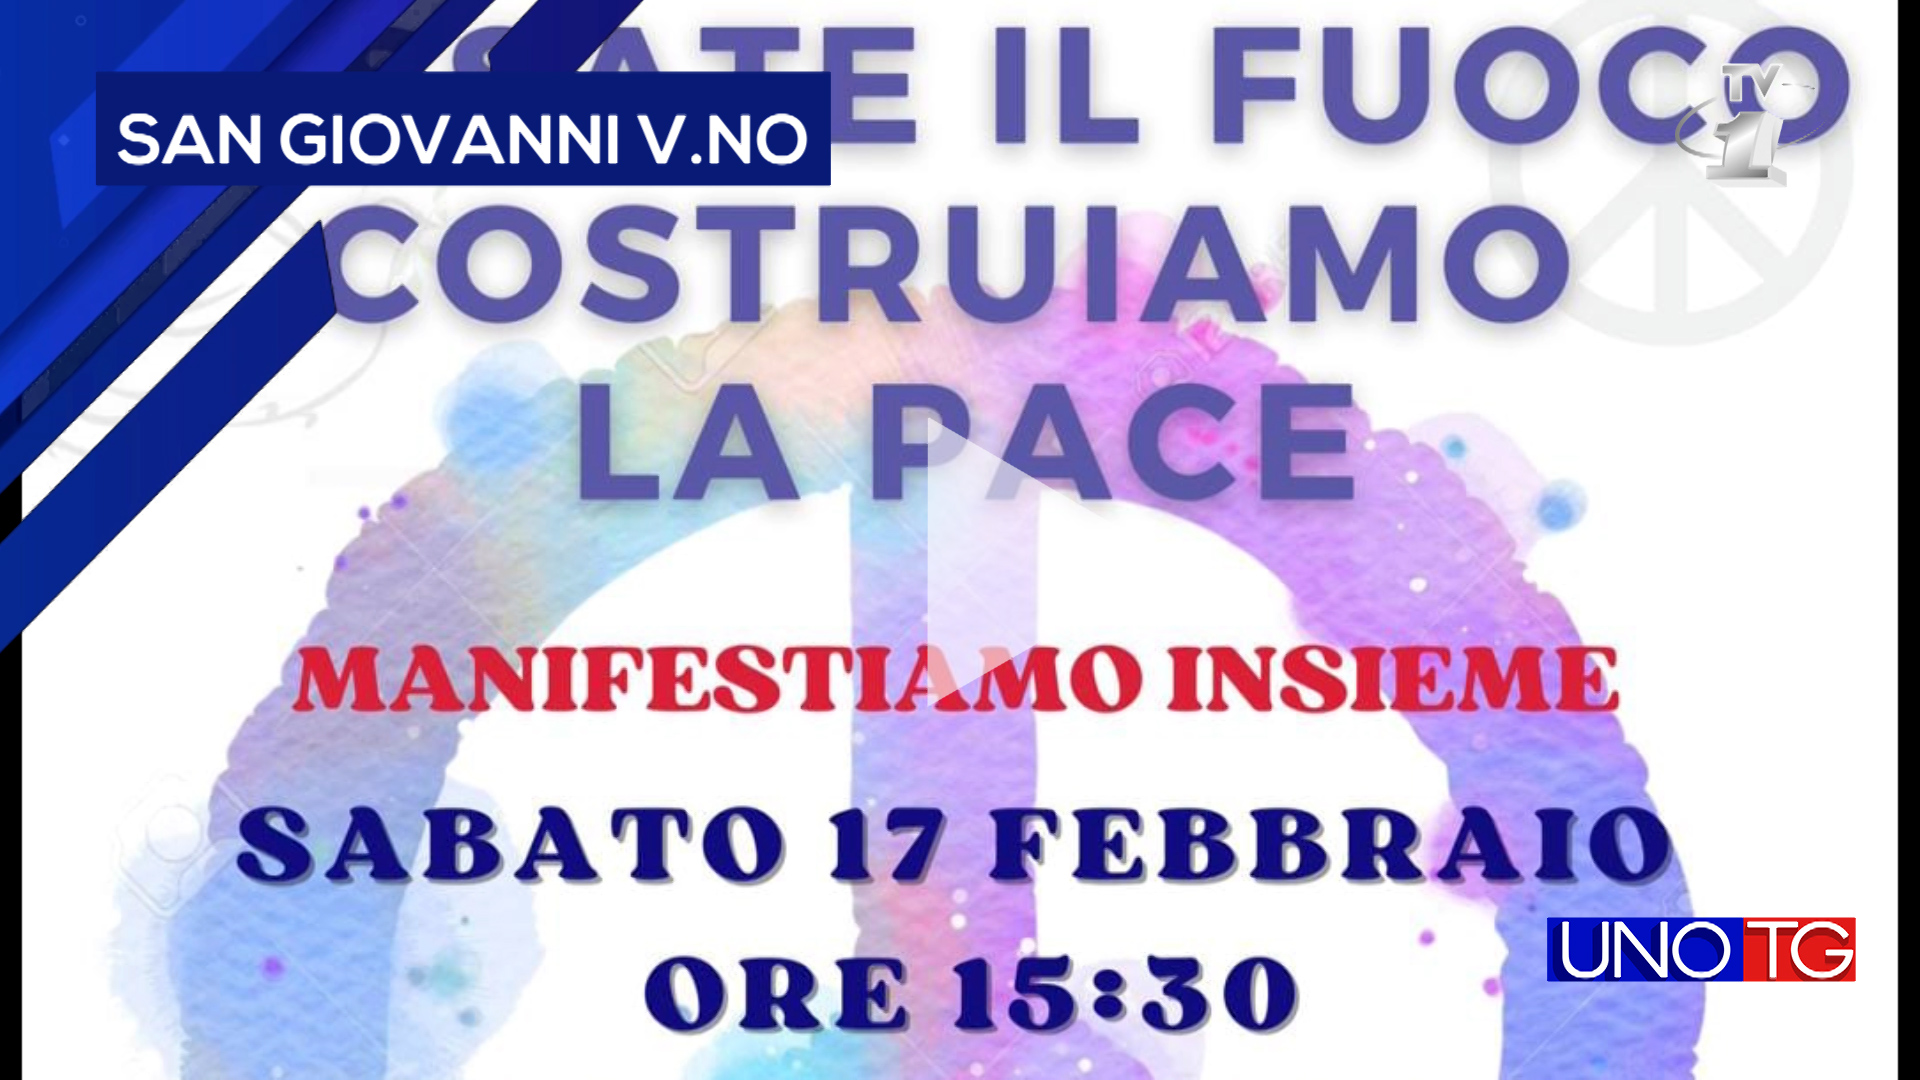 Manifestazione per la pace sabato 17 febbraio in piazza Masaccio a San Giovanni V.no.